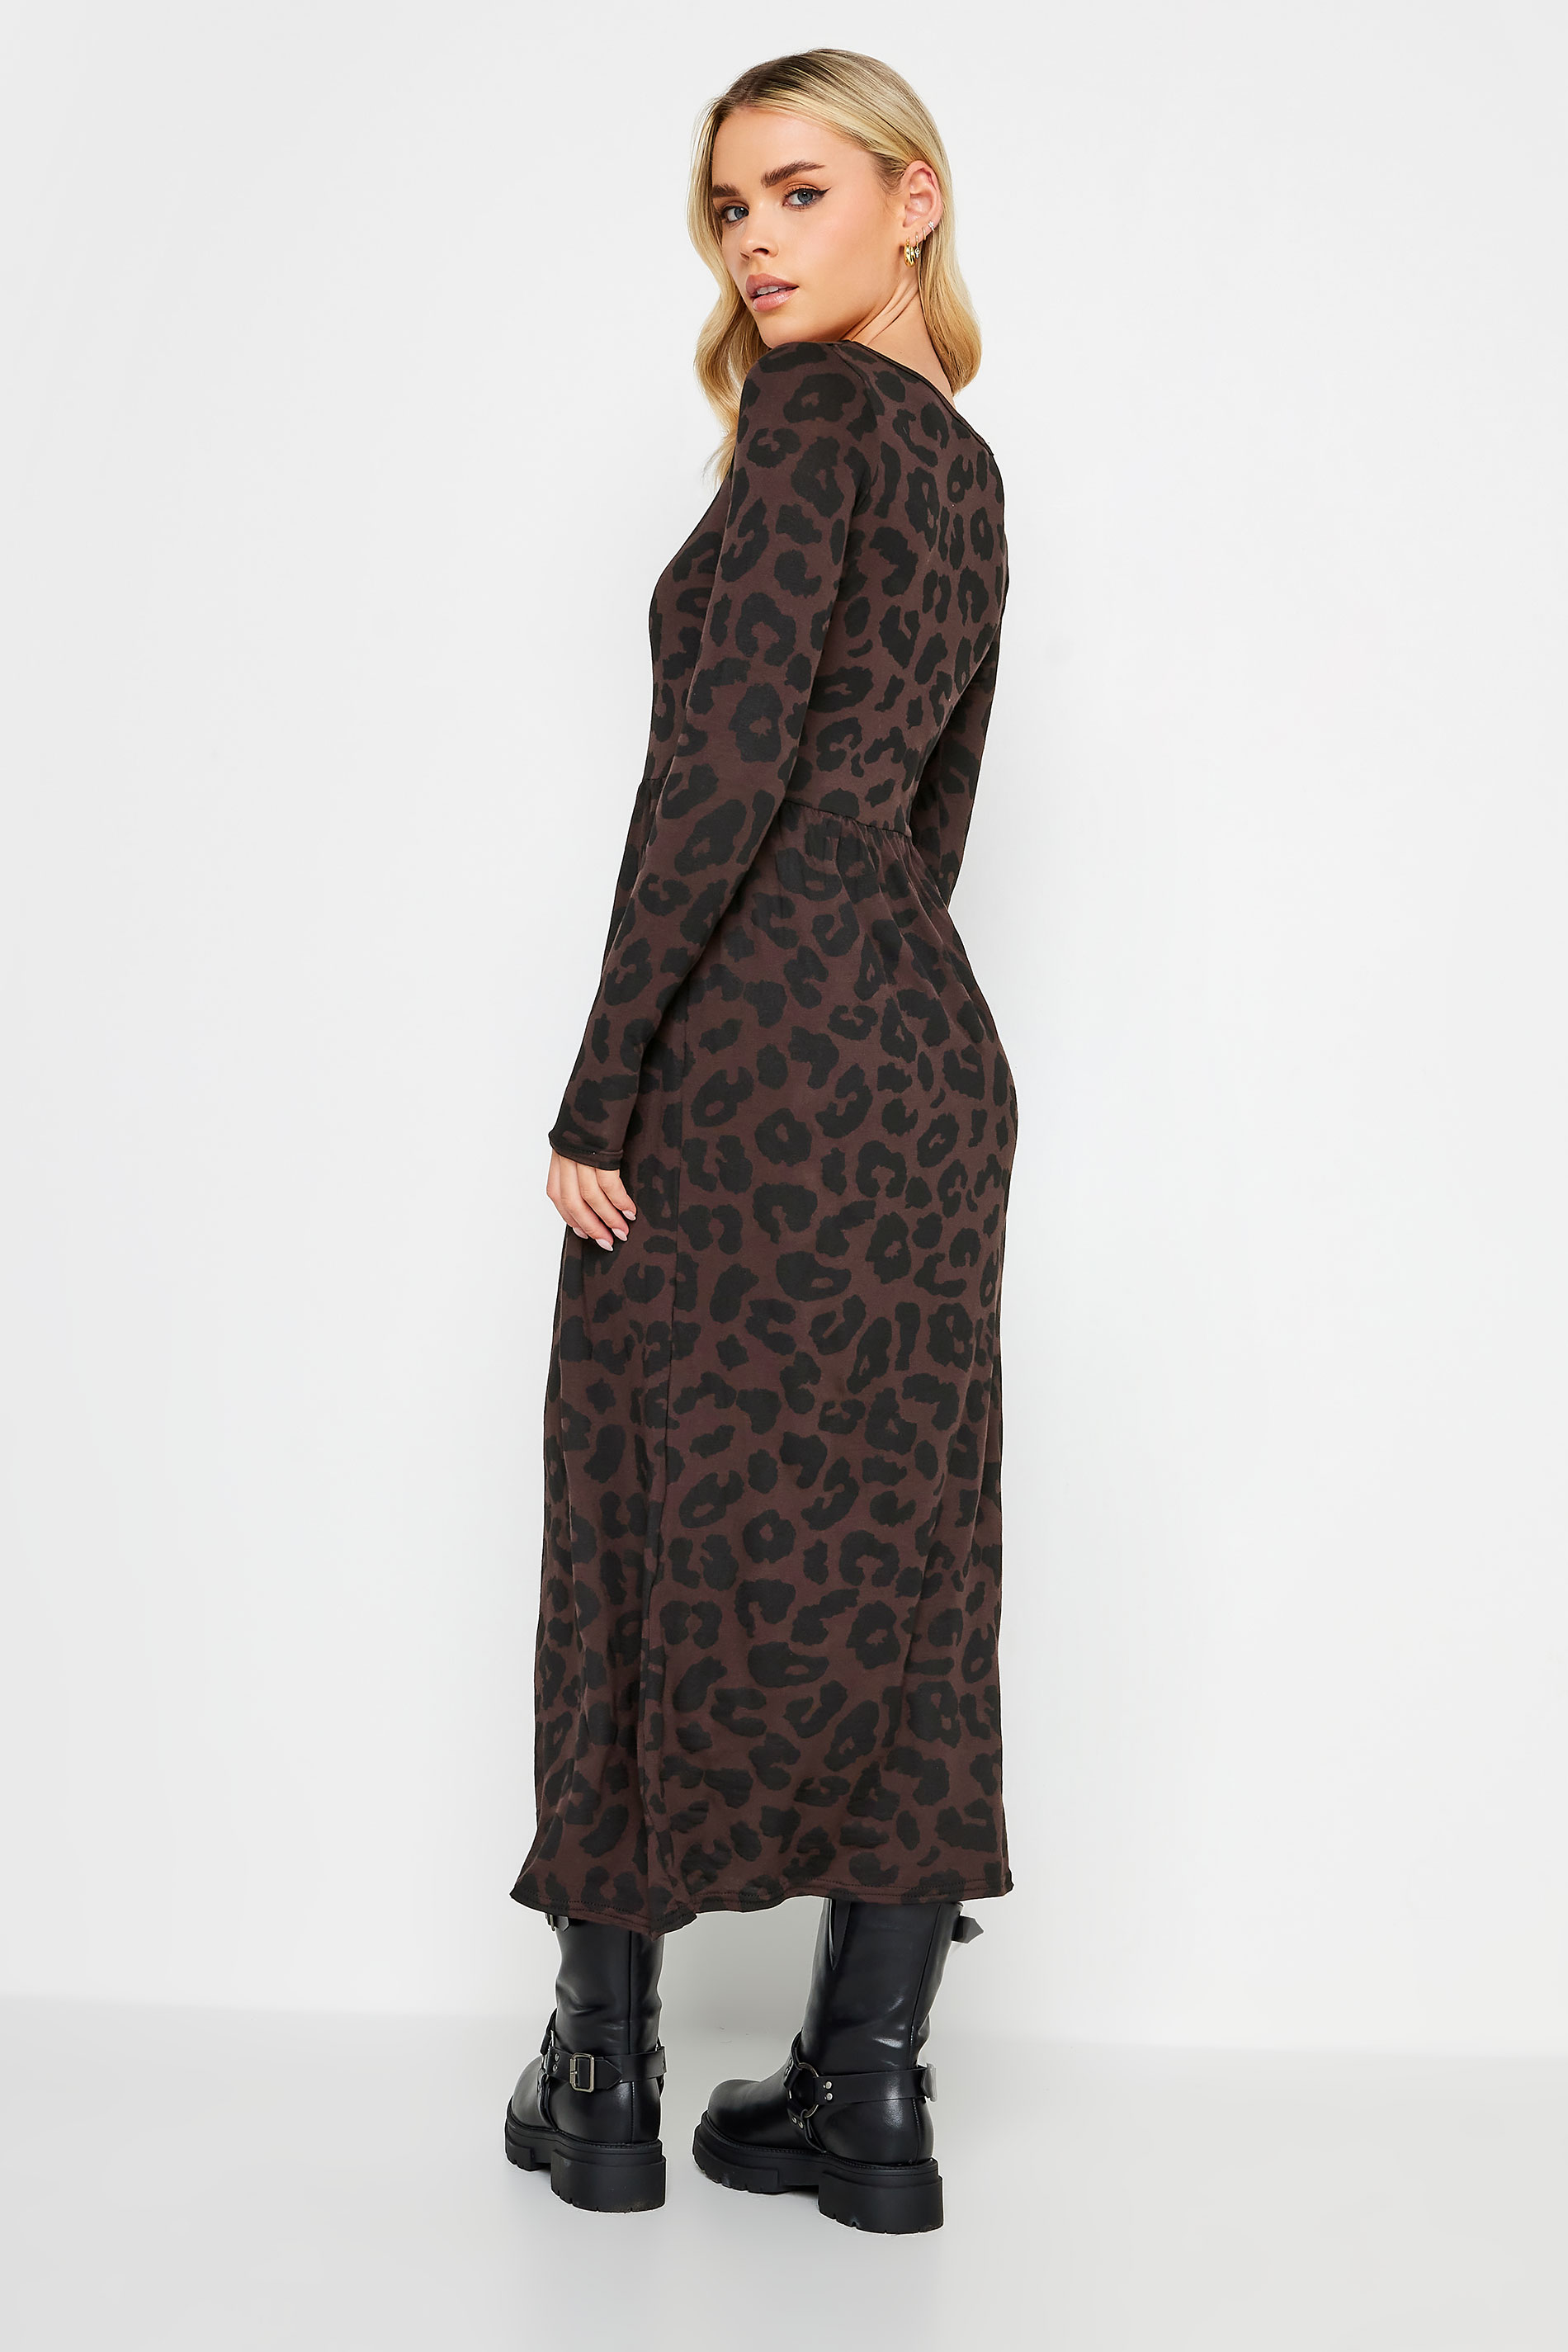 PixieGirl Petite Brown Leopard Print Long Sleeve Midi Dress | PixieGirl